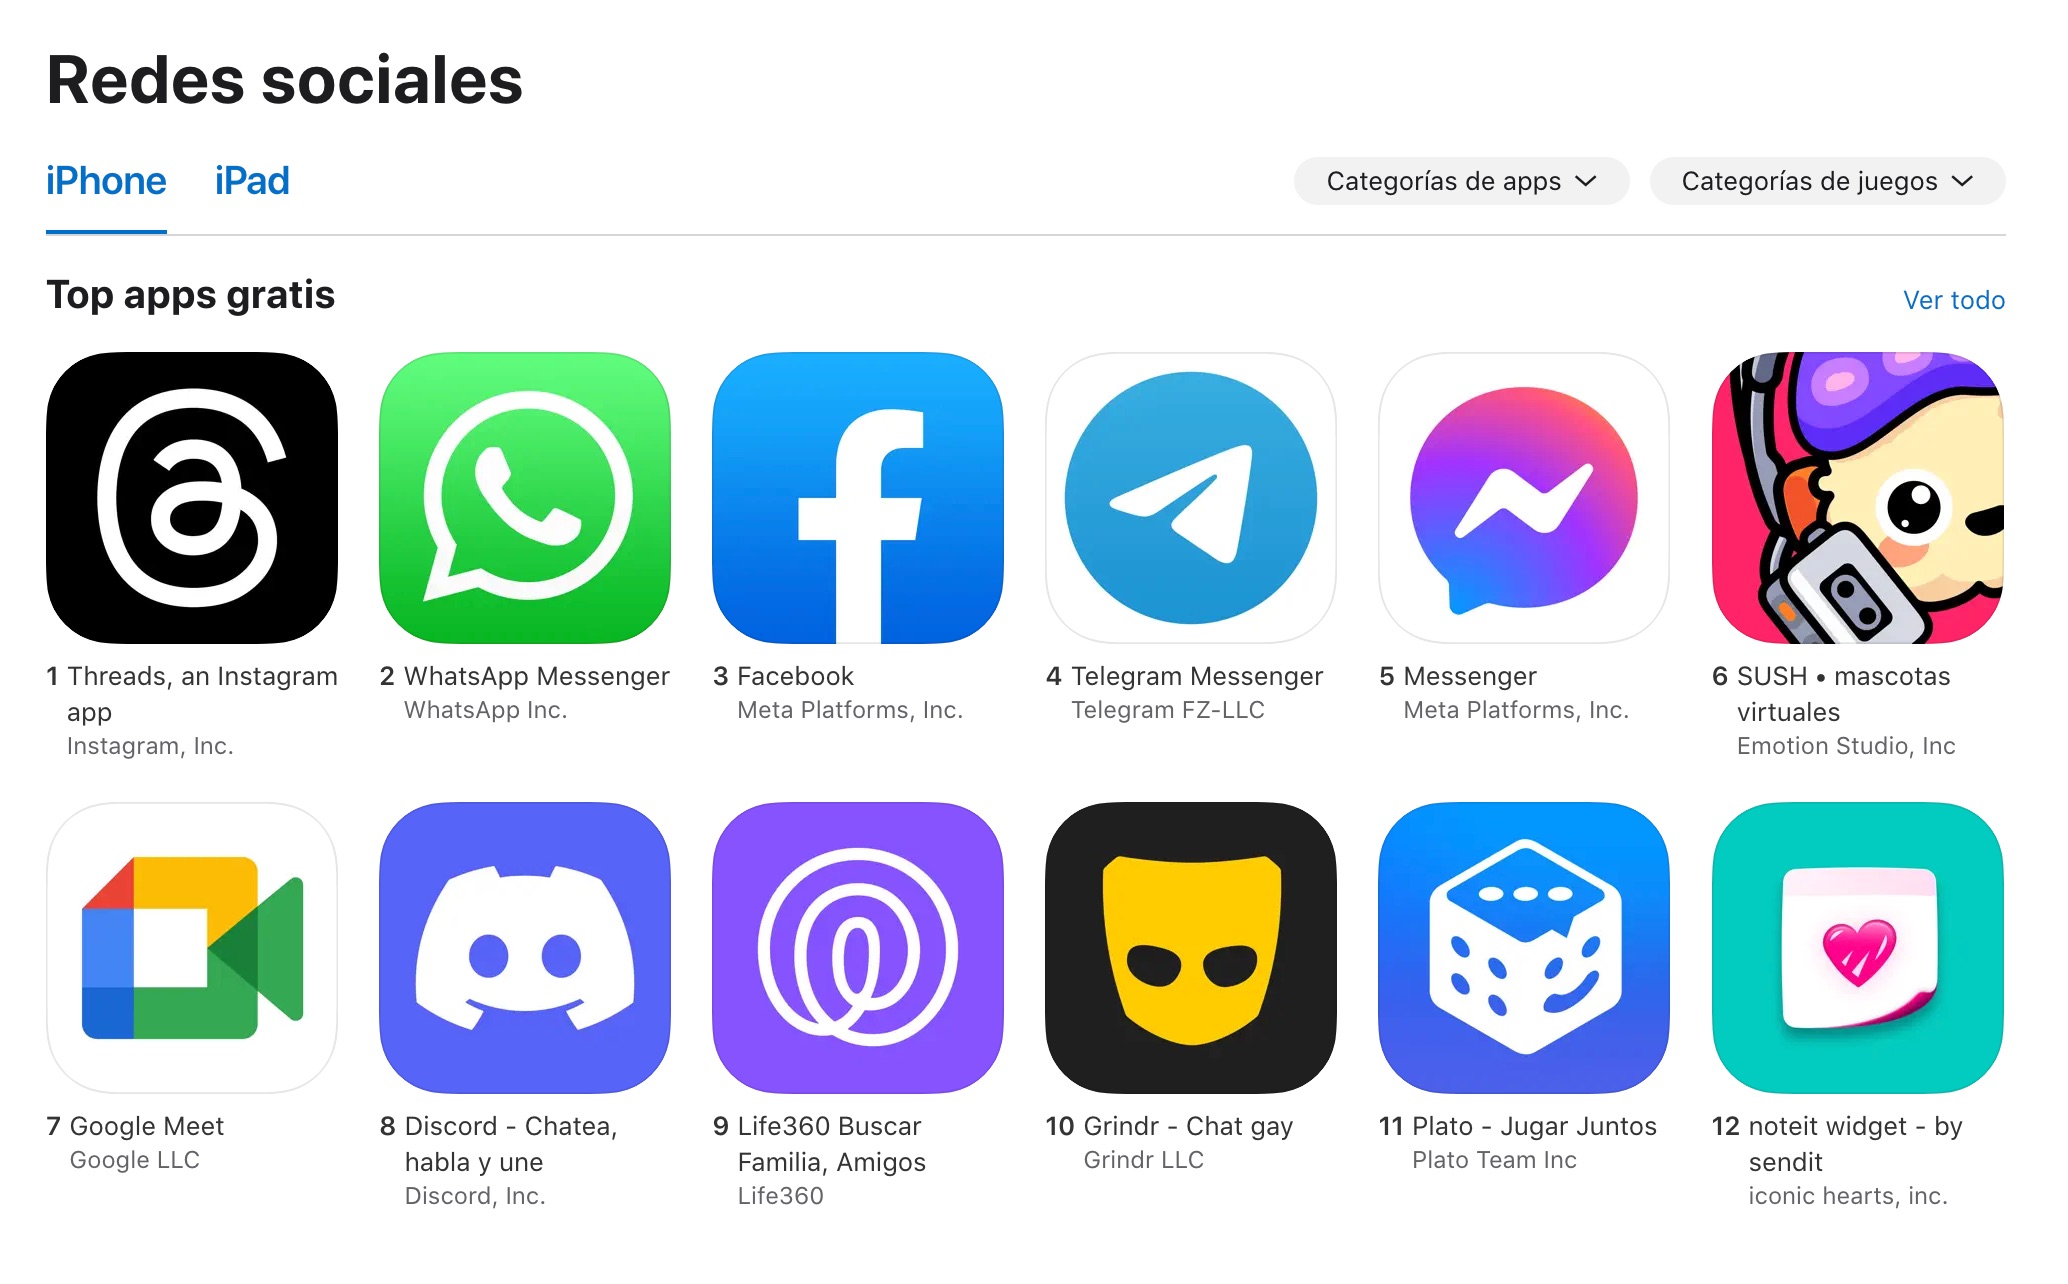 Top de Apps gratuitas en la categoría de redes sociales